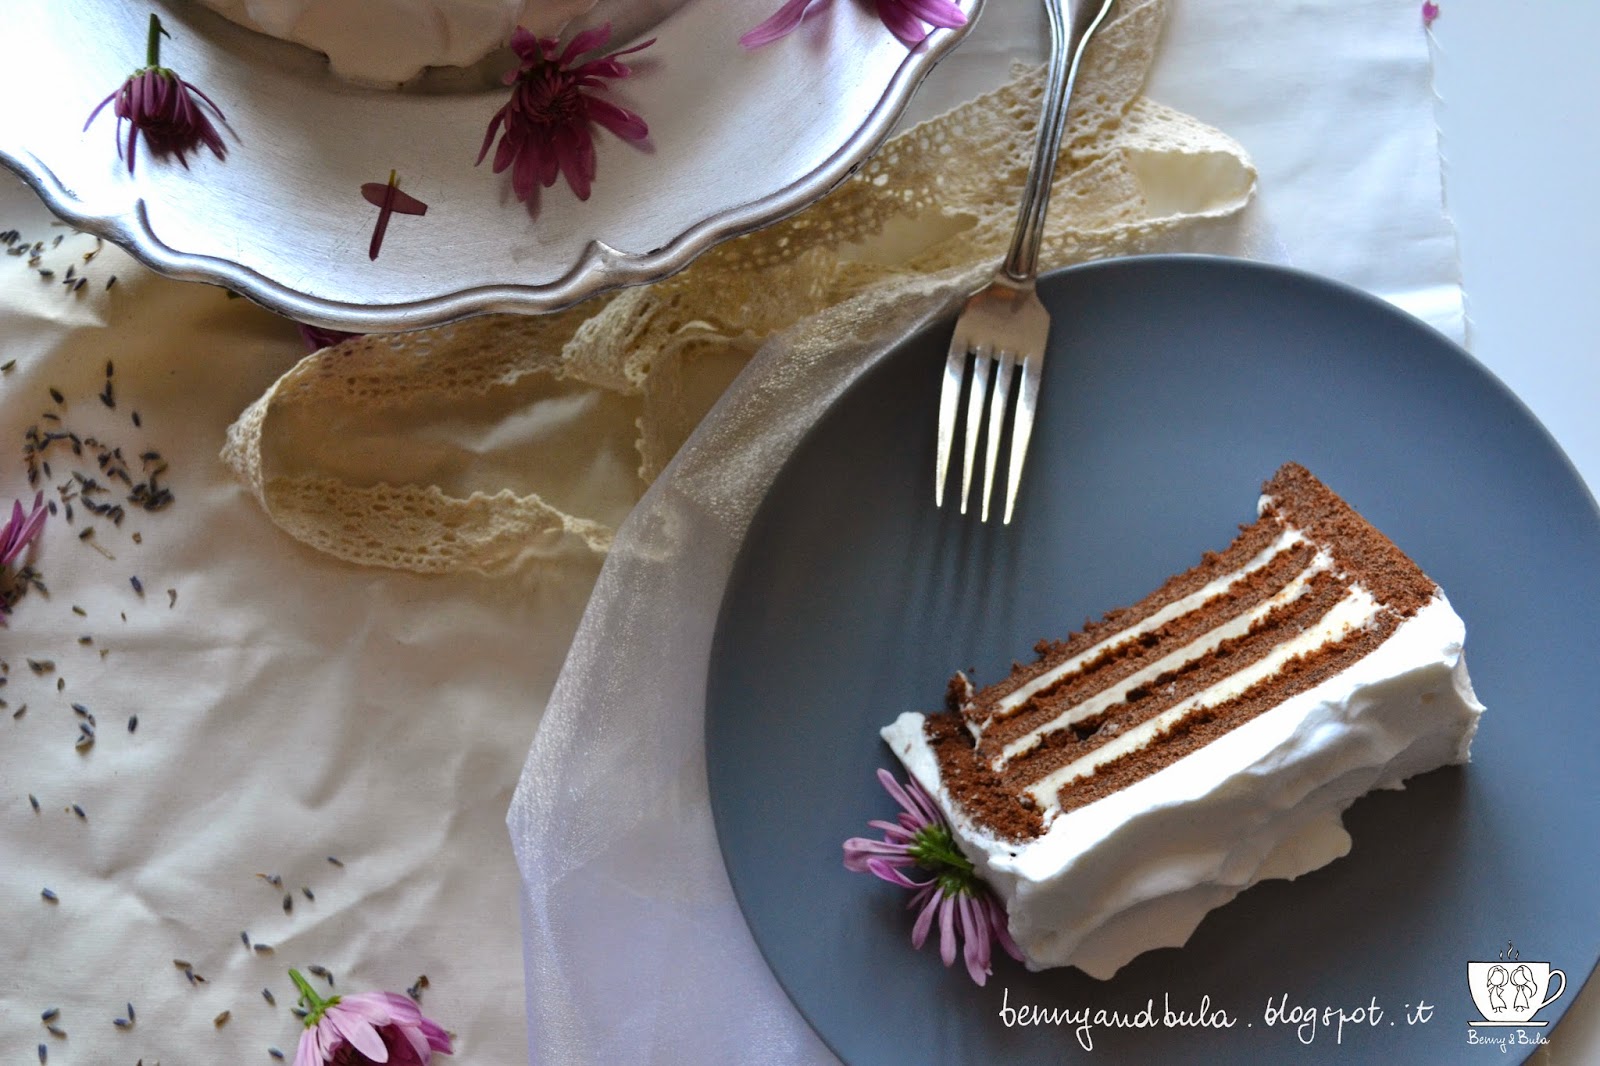 provencal coffee cake recipe with lavender and chocolate, vertical striped/ ricetta torta a strisce verticali con lavanda fondo di caffè e cioccolato